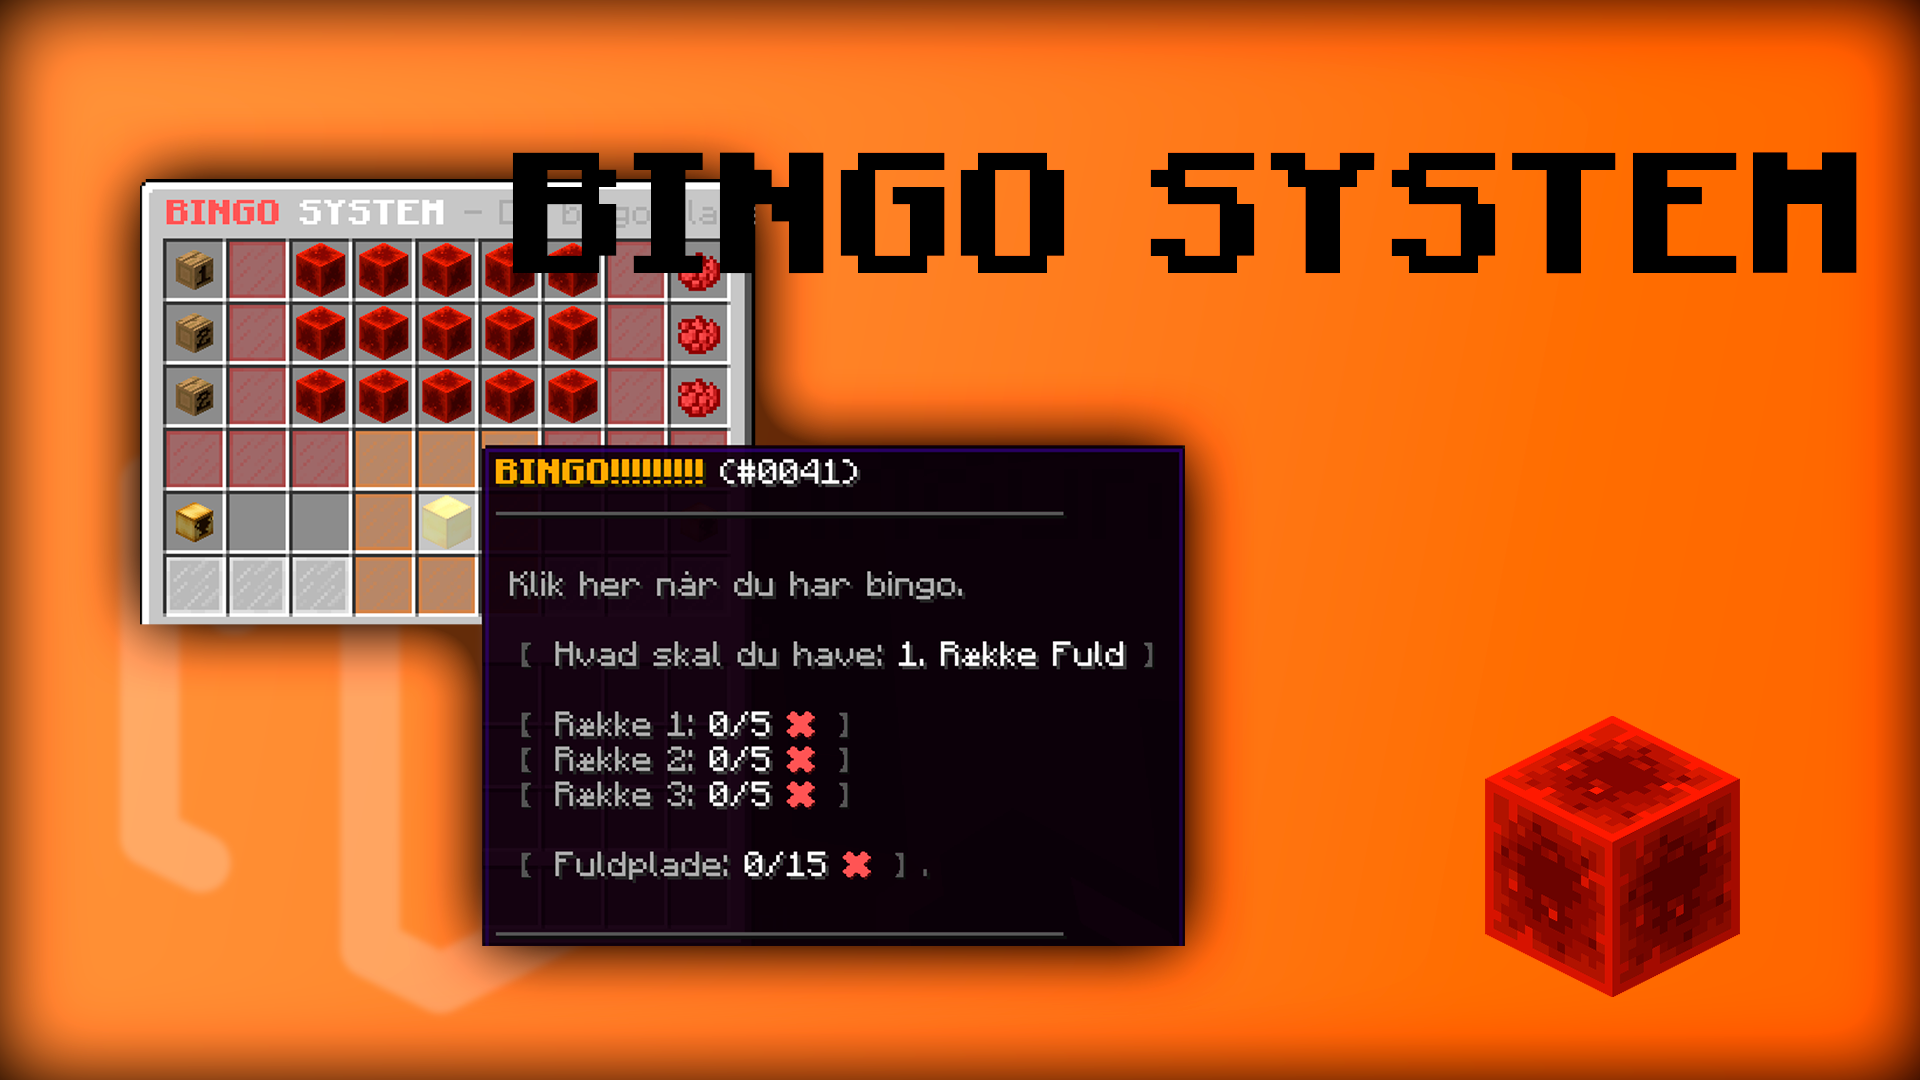 Bingo System